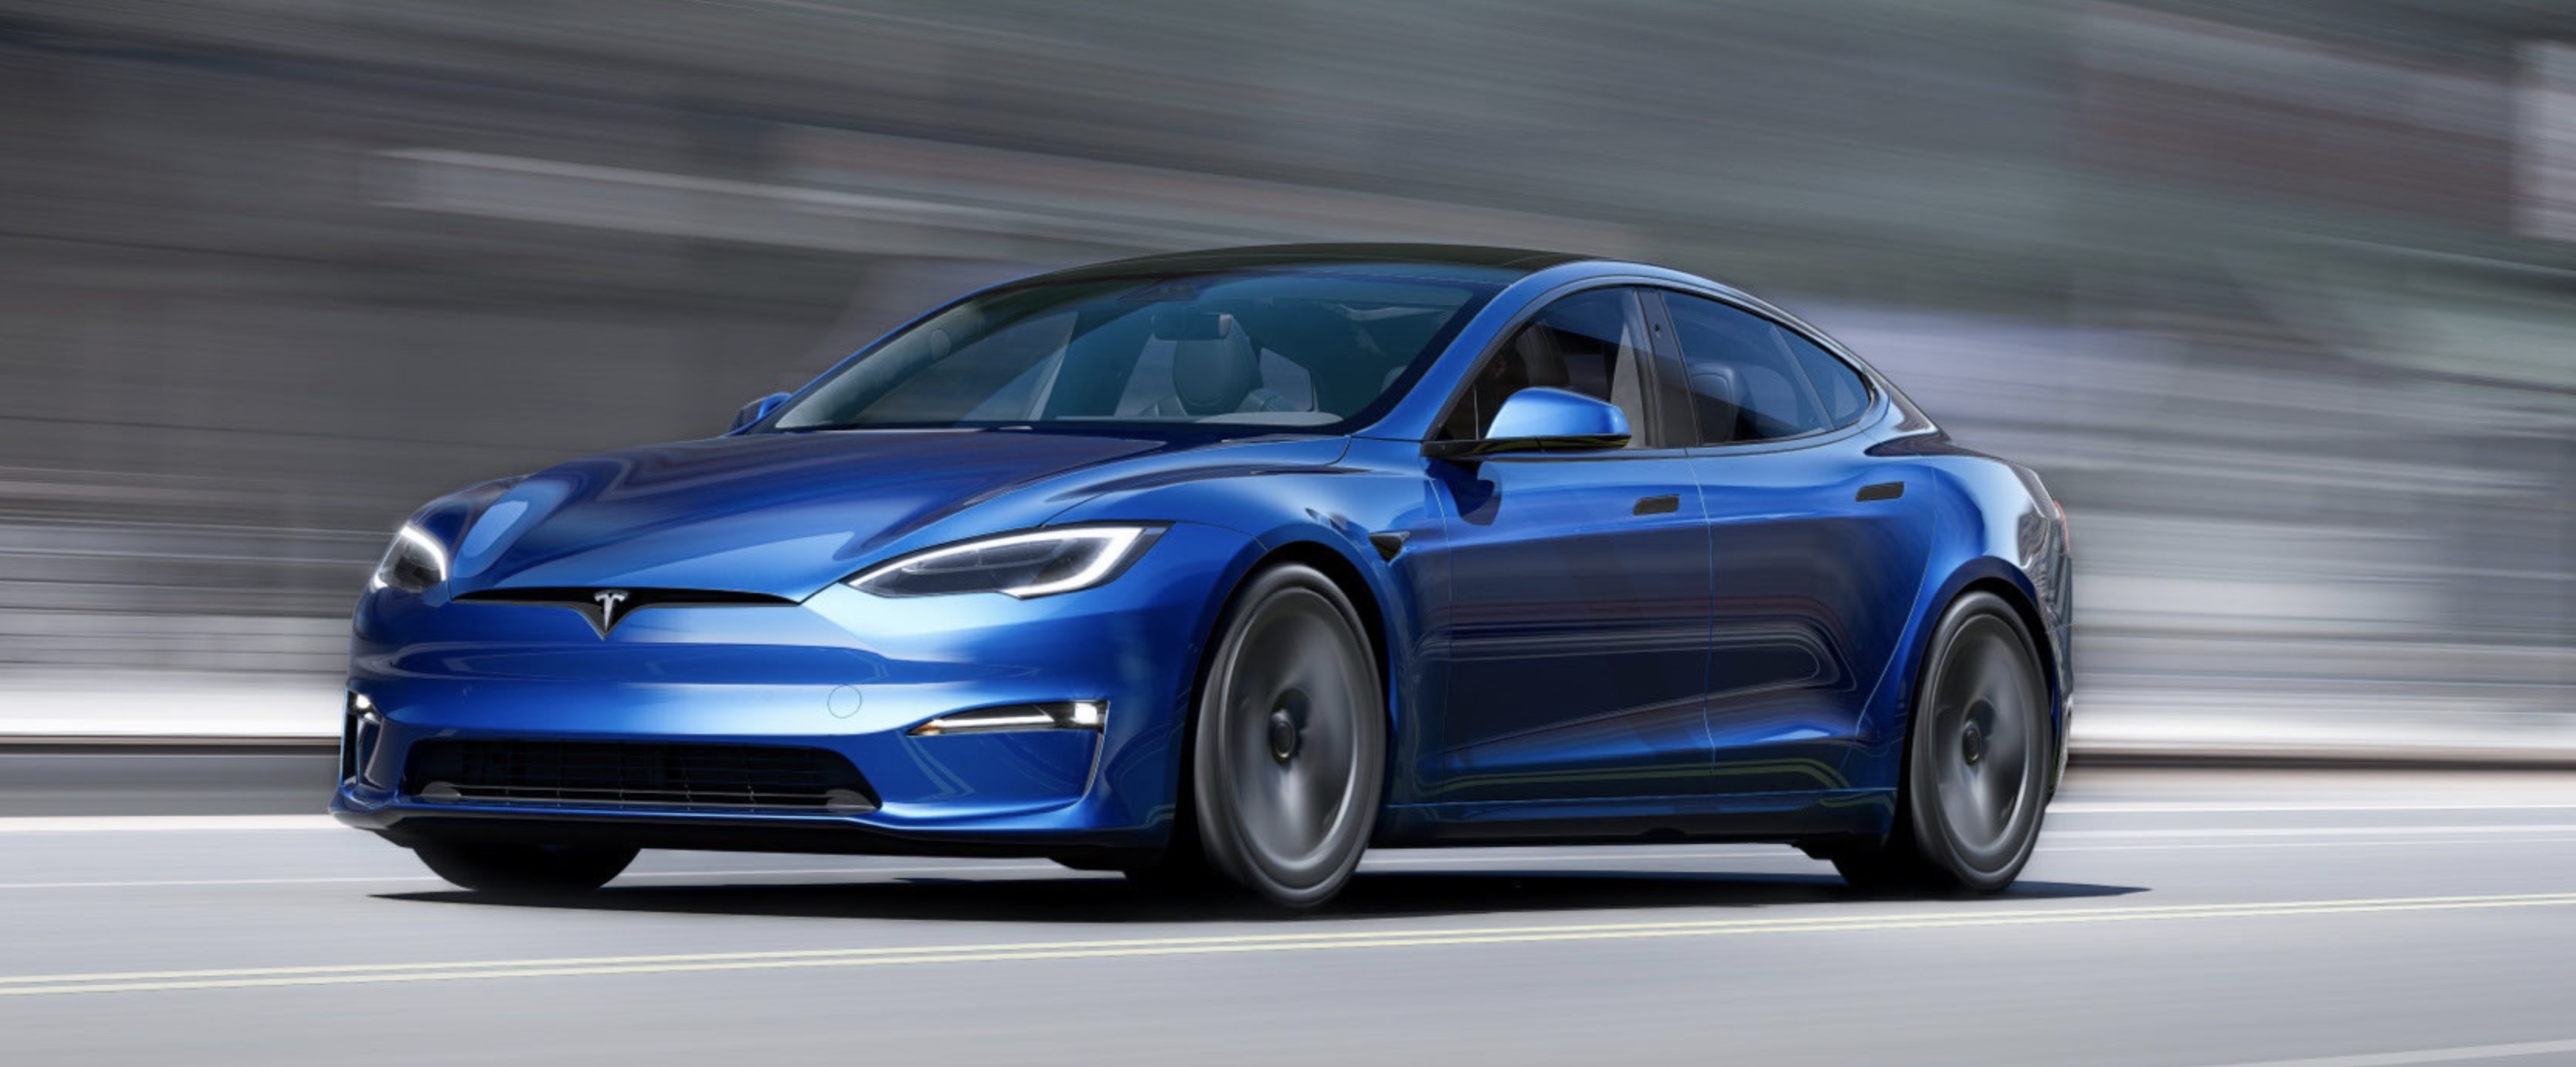 garen logboek samenzwering Tesla new Model S/X refresh: 12 new features yet to be announced - Electrek